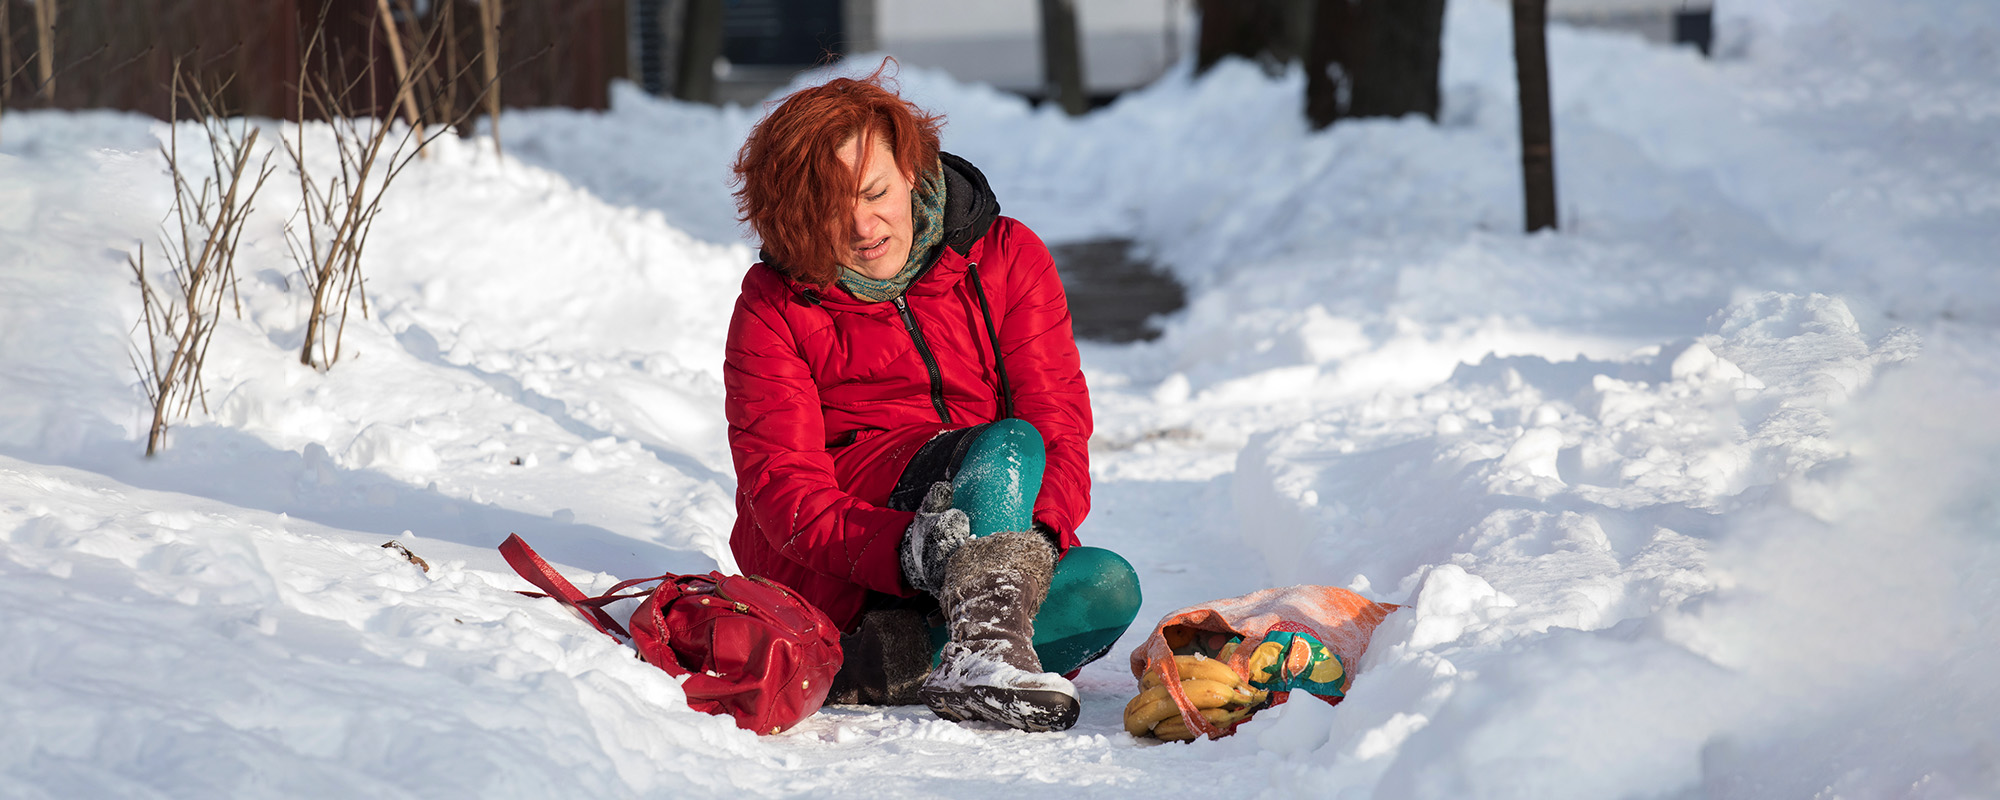 woman injured fall snow sidewalk